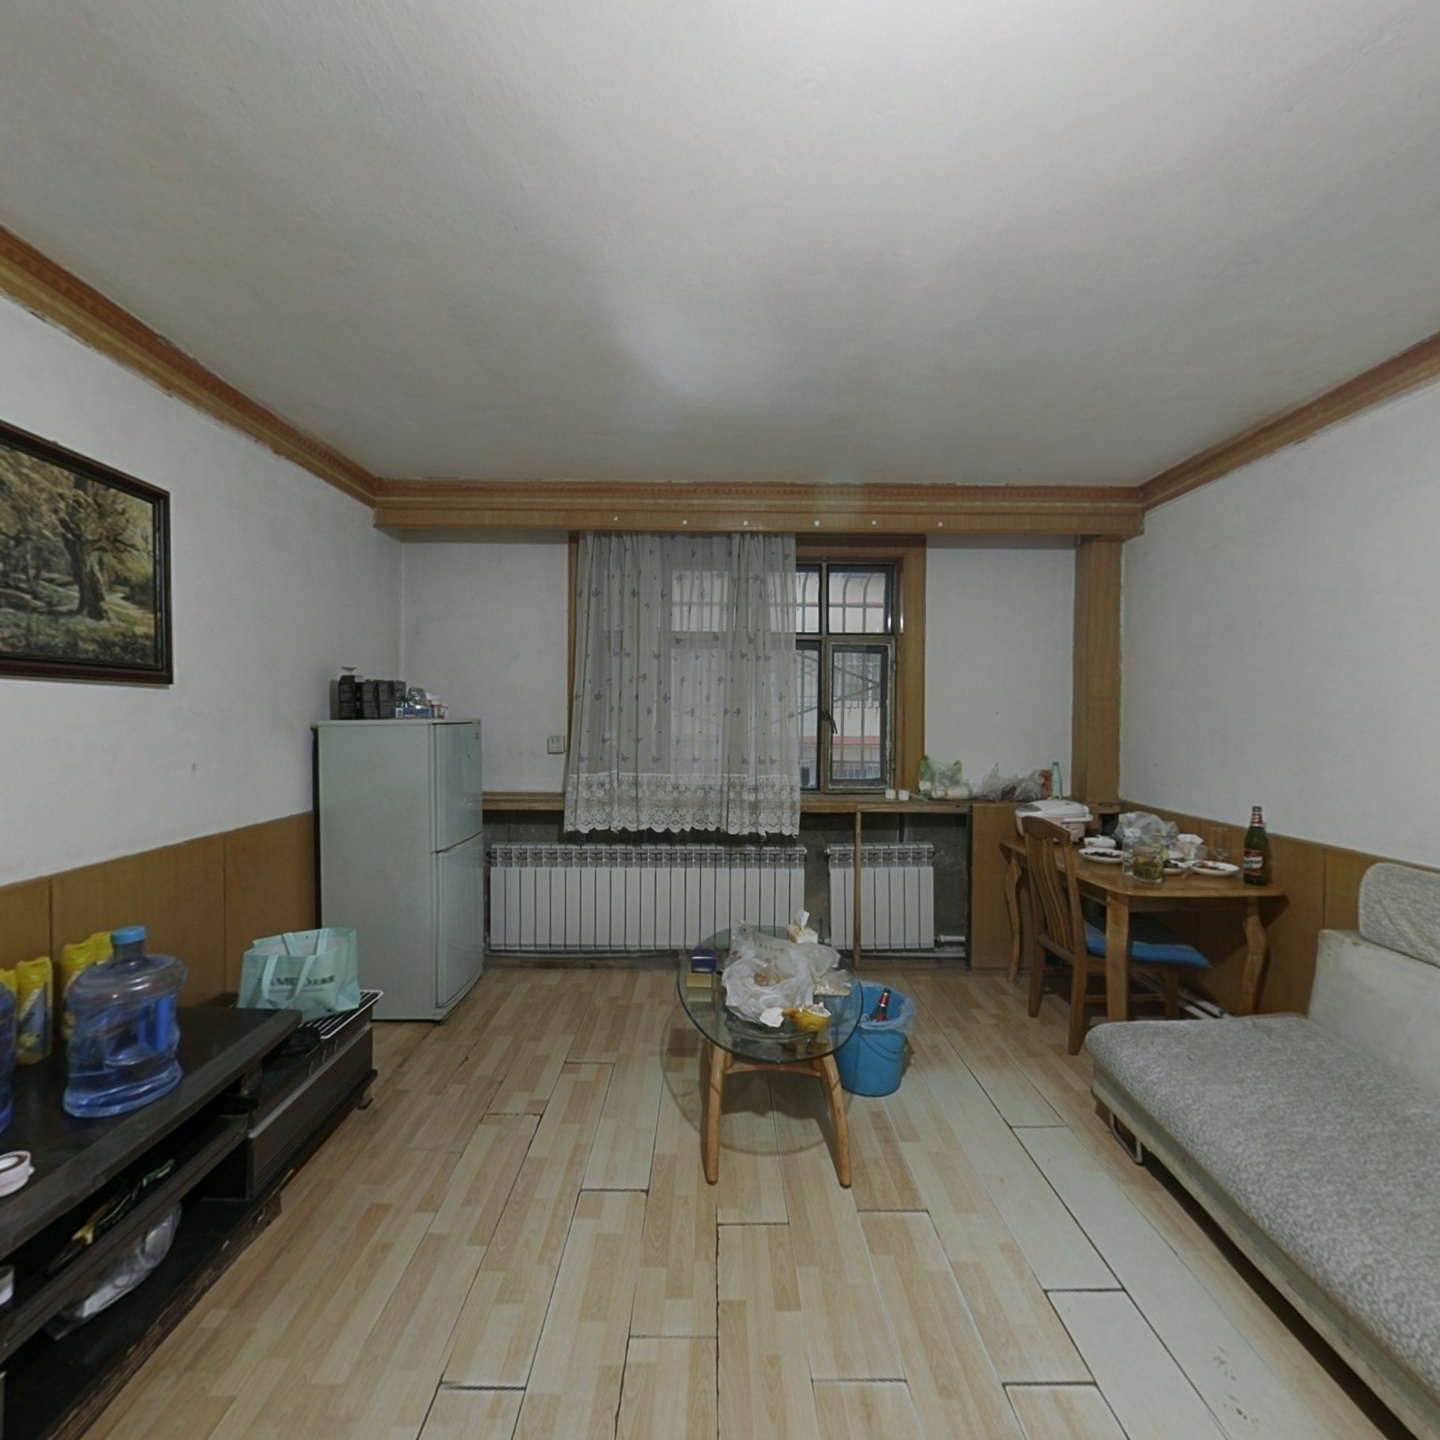 京都小区四楼两室一厅简单装修户型方正